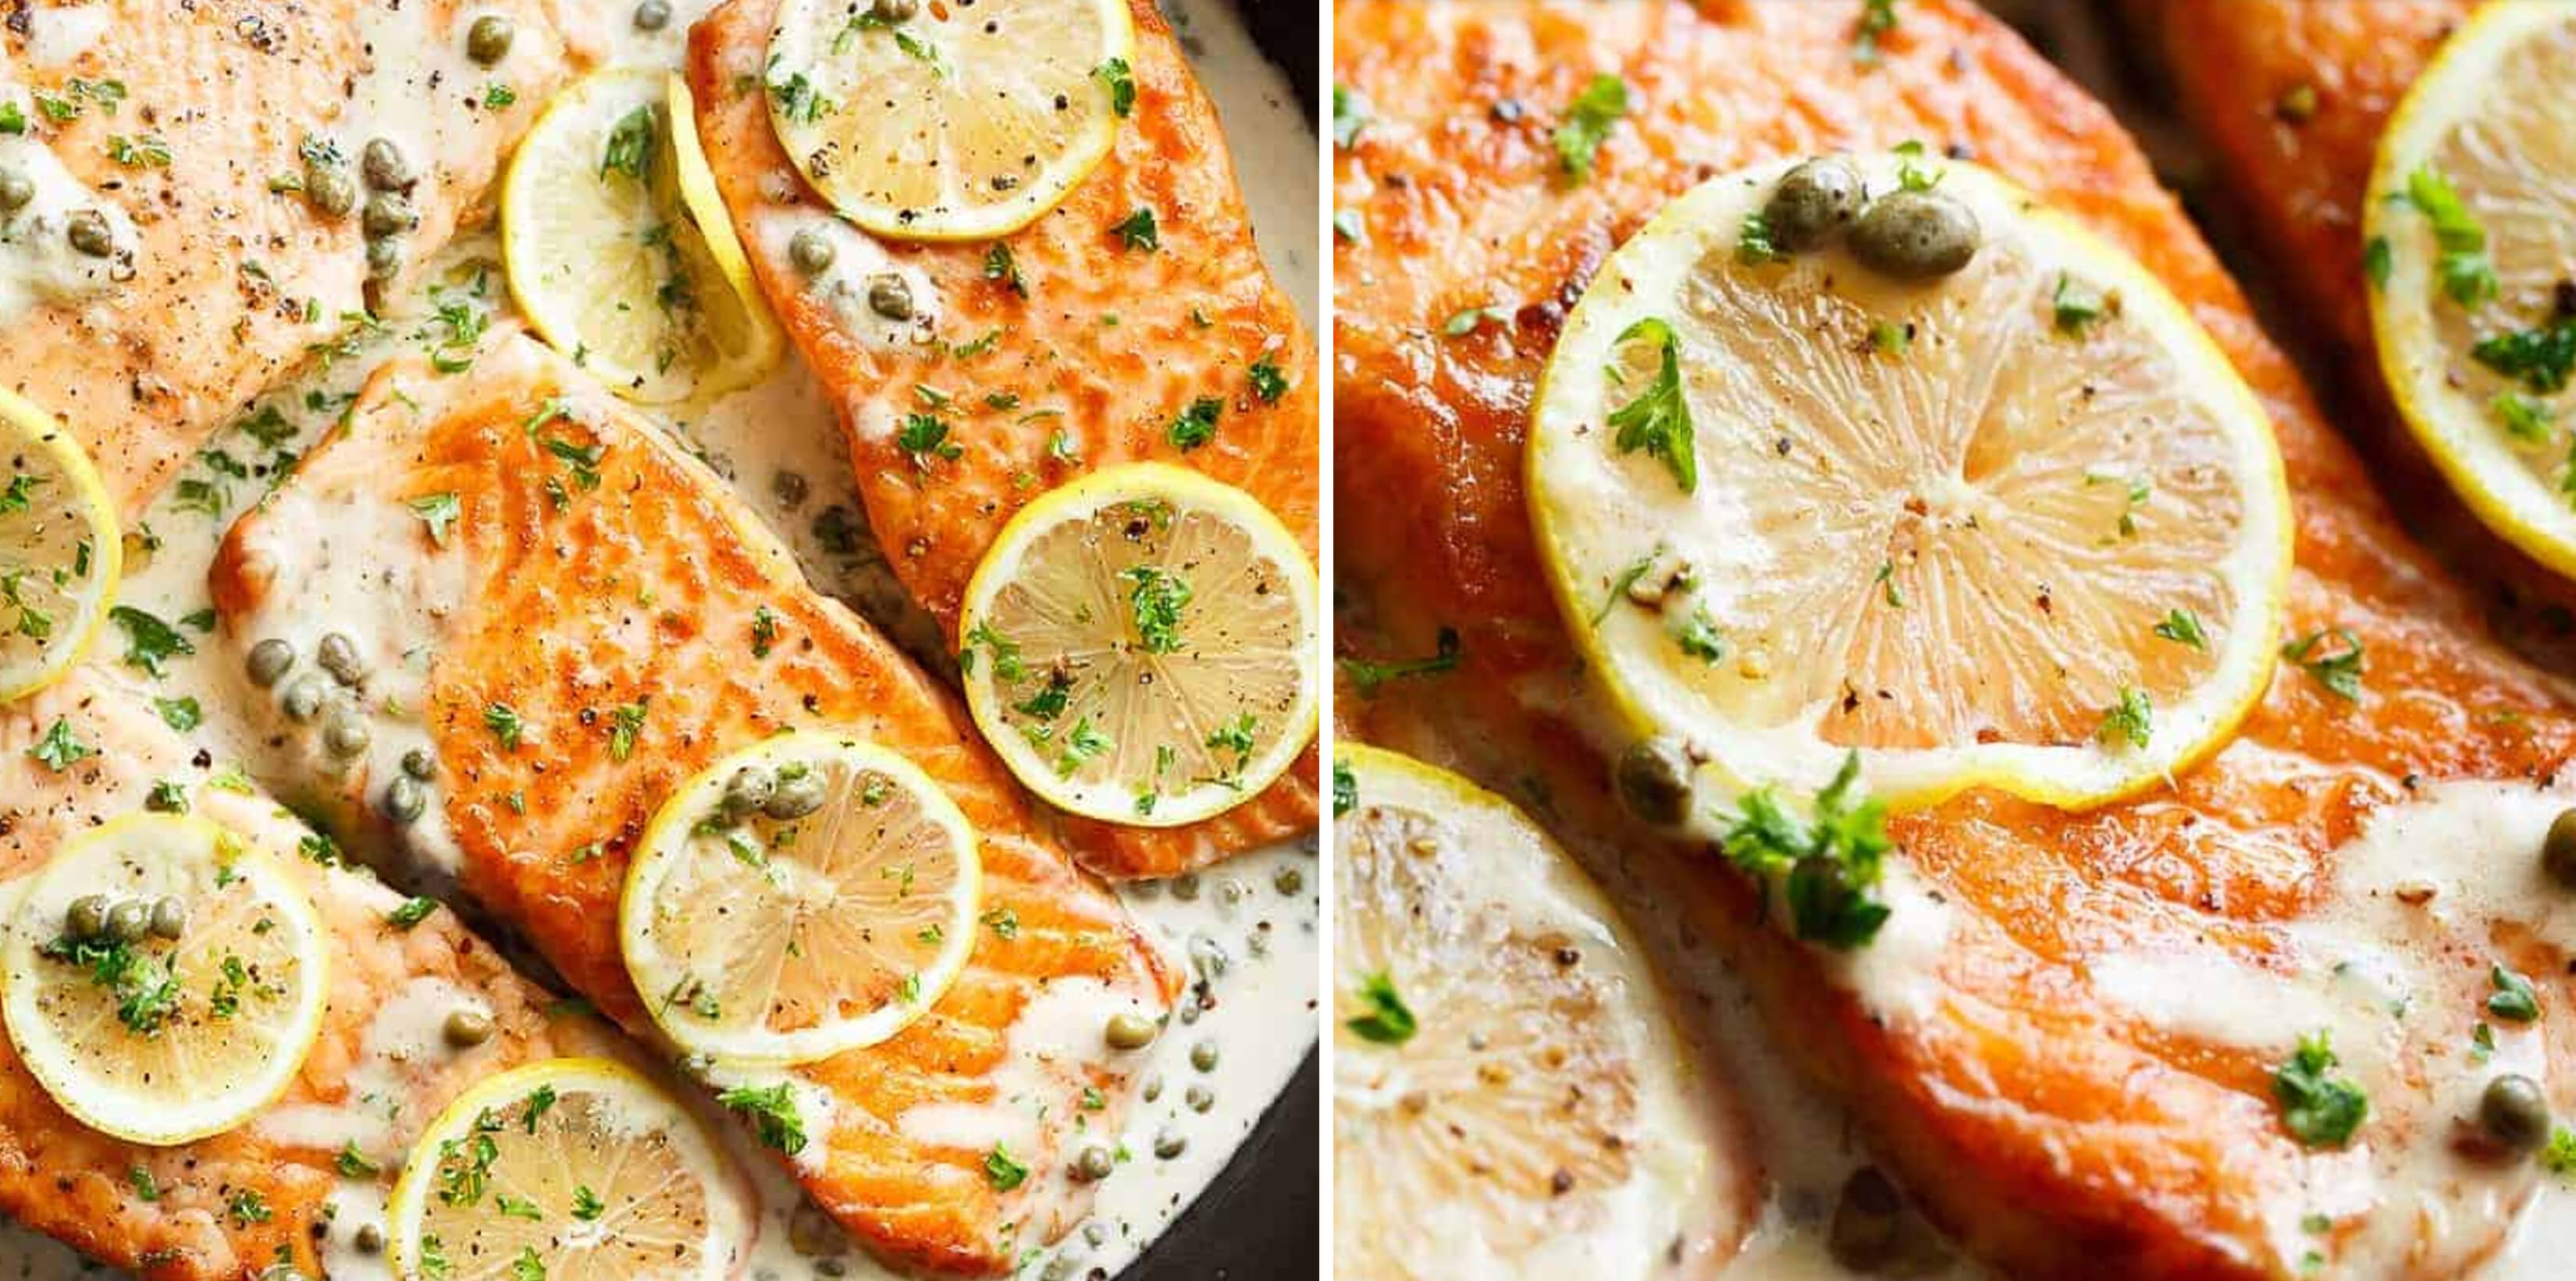 Enjoy this creamy lemon garlic salmon recipe just in time ...